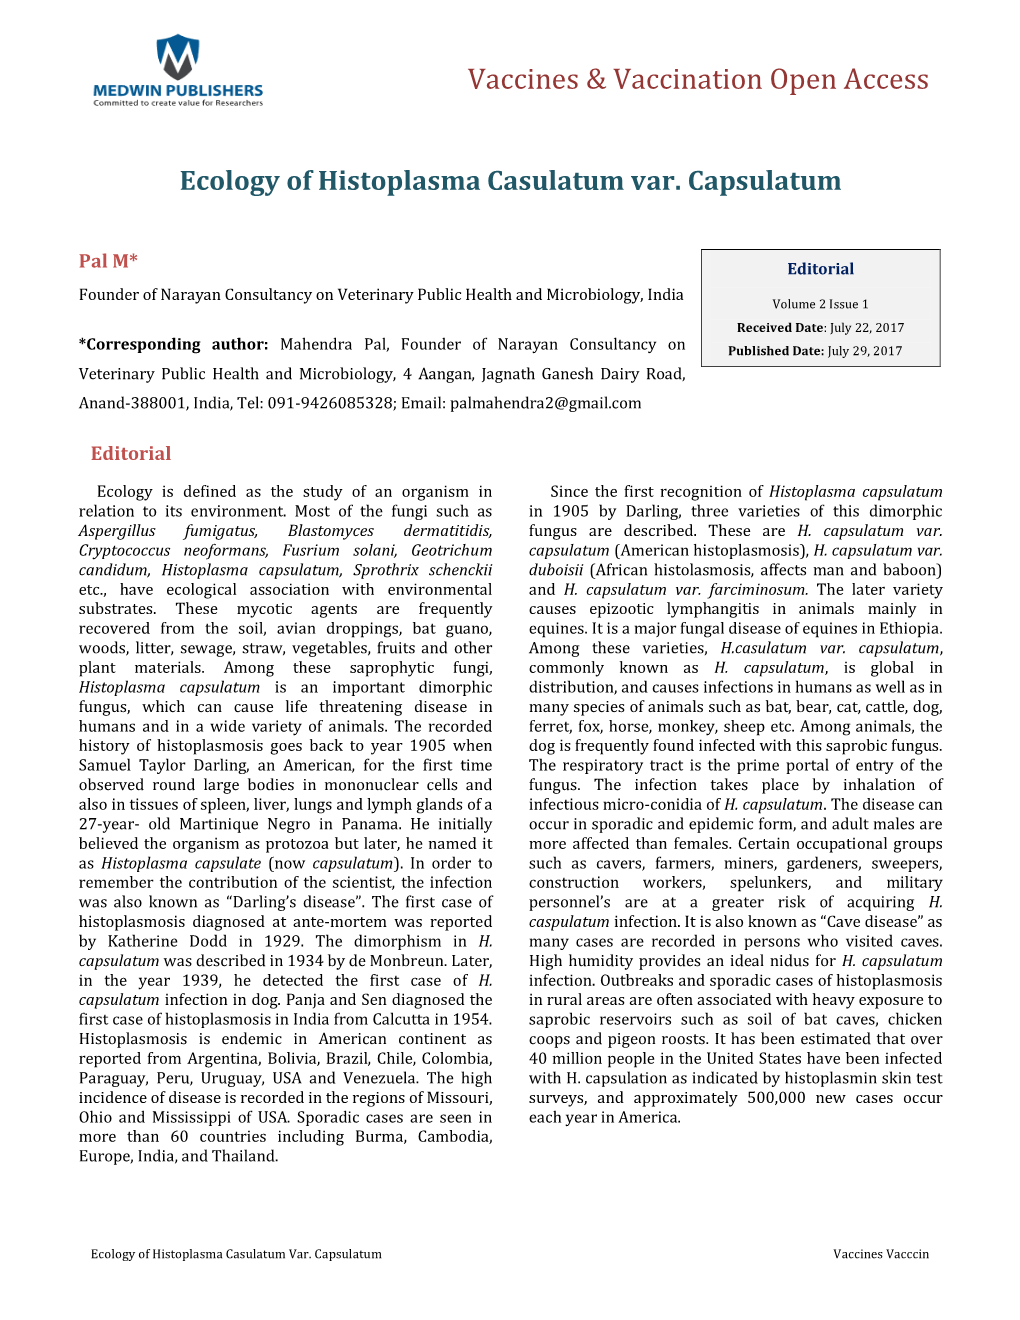 Ecology of Histoplasma Casulatum Var. Capsulatum